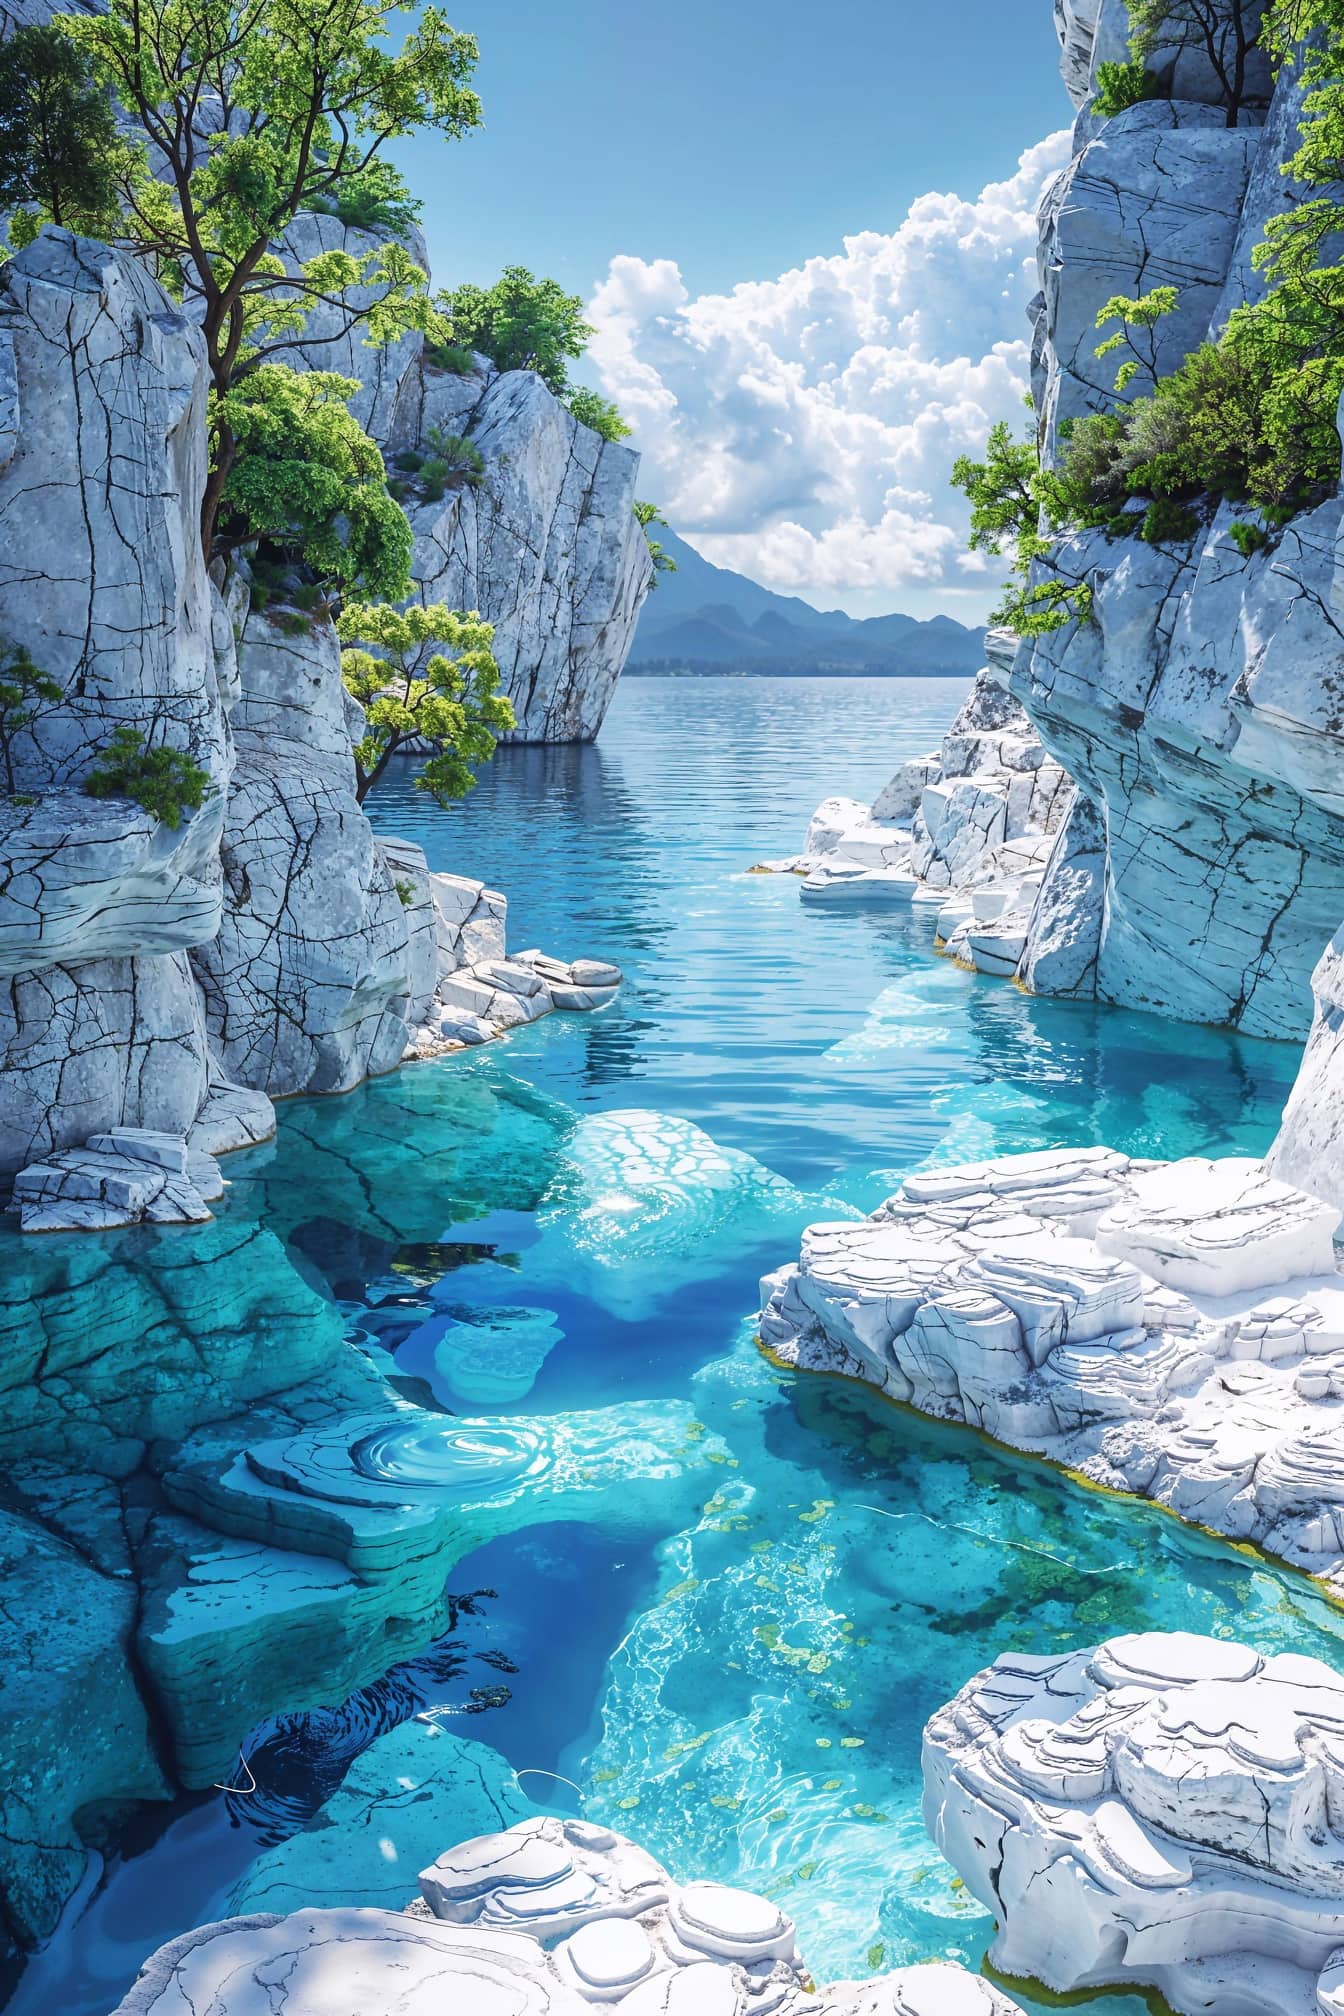 Захватывающее изображение залива с белыми мраморными скалами и деревьями